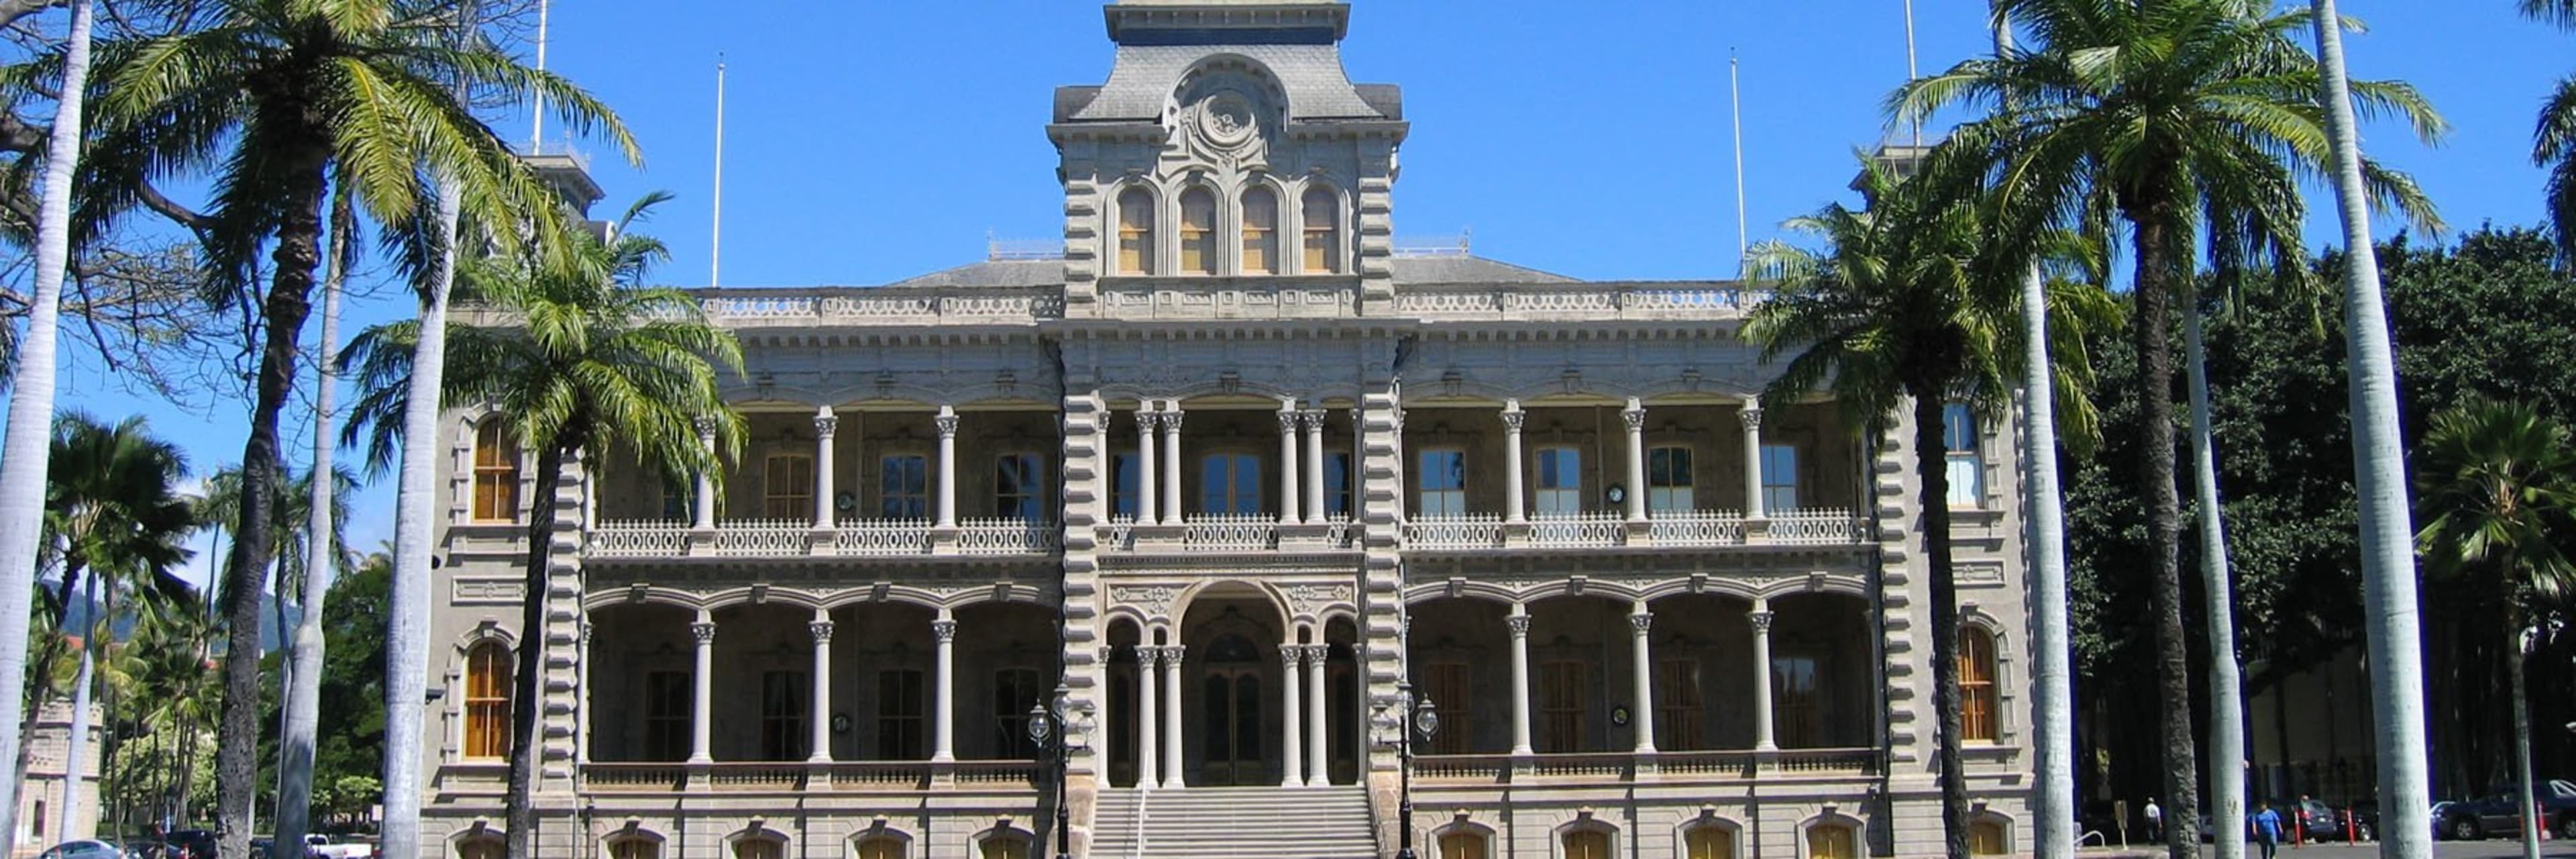 Iolani Palace exterior